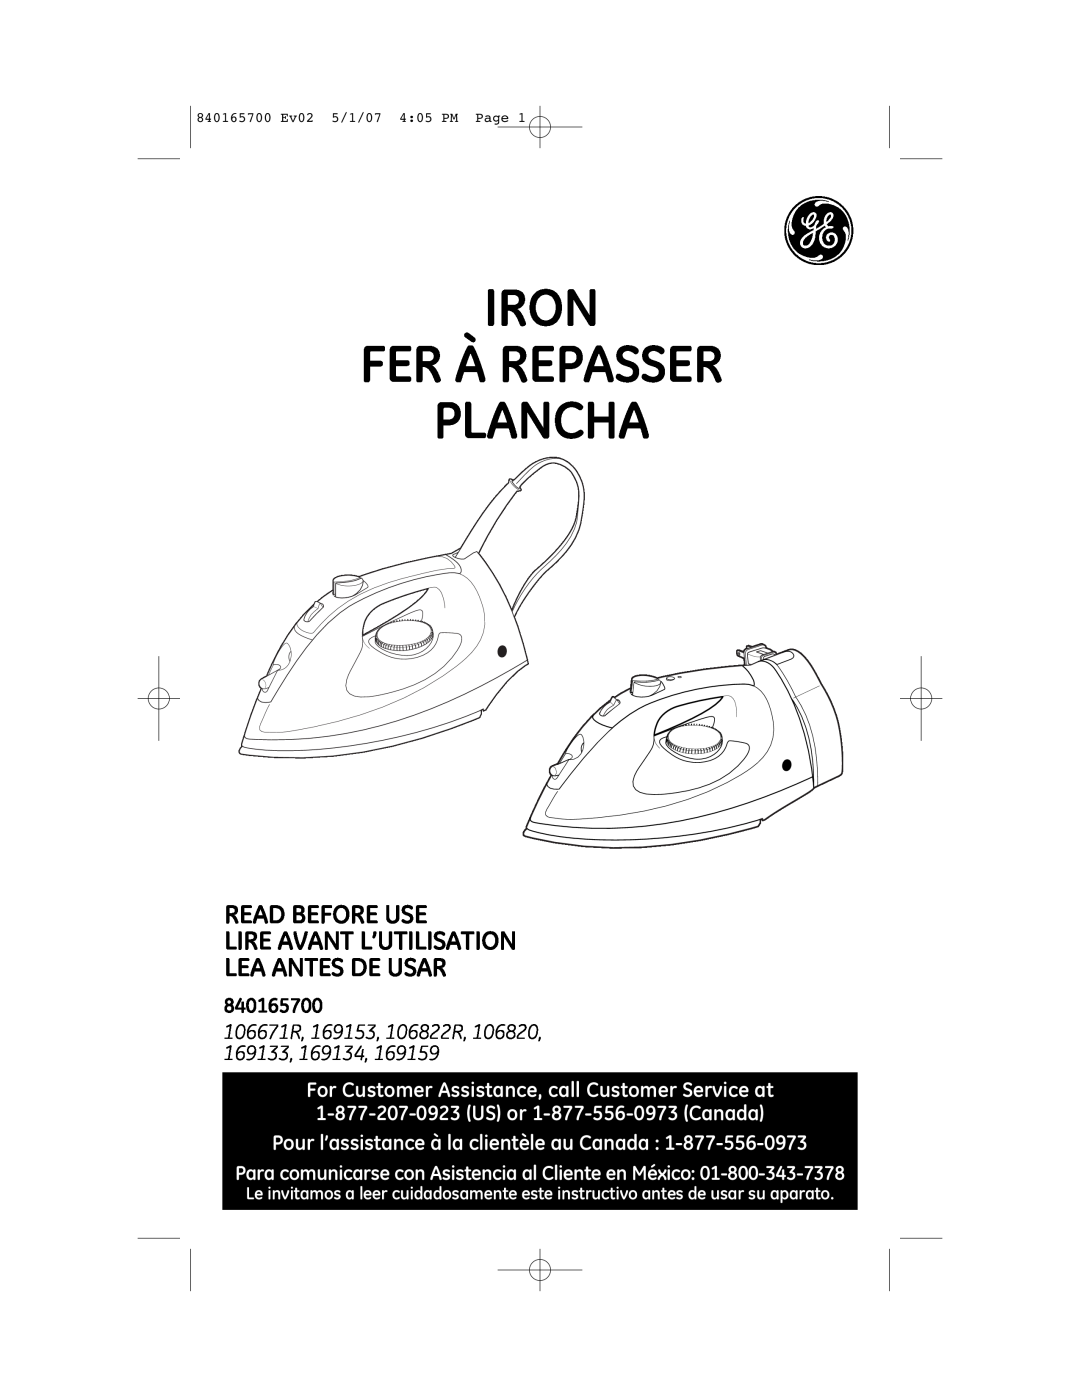 GE 169194, 169159 manual Pour l’assistance à la clientèle au Canada, Iron Fer À Repasser Plancha, 840165700 